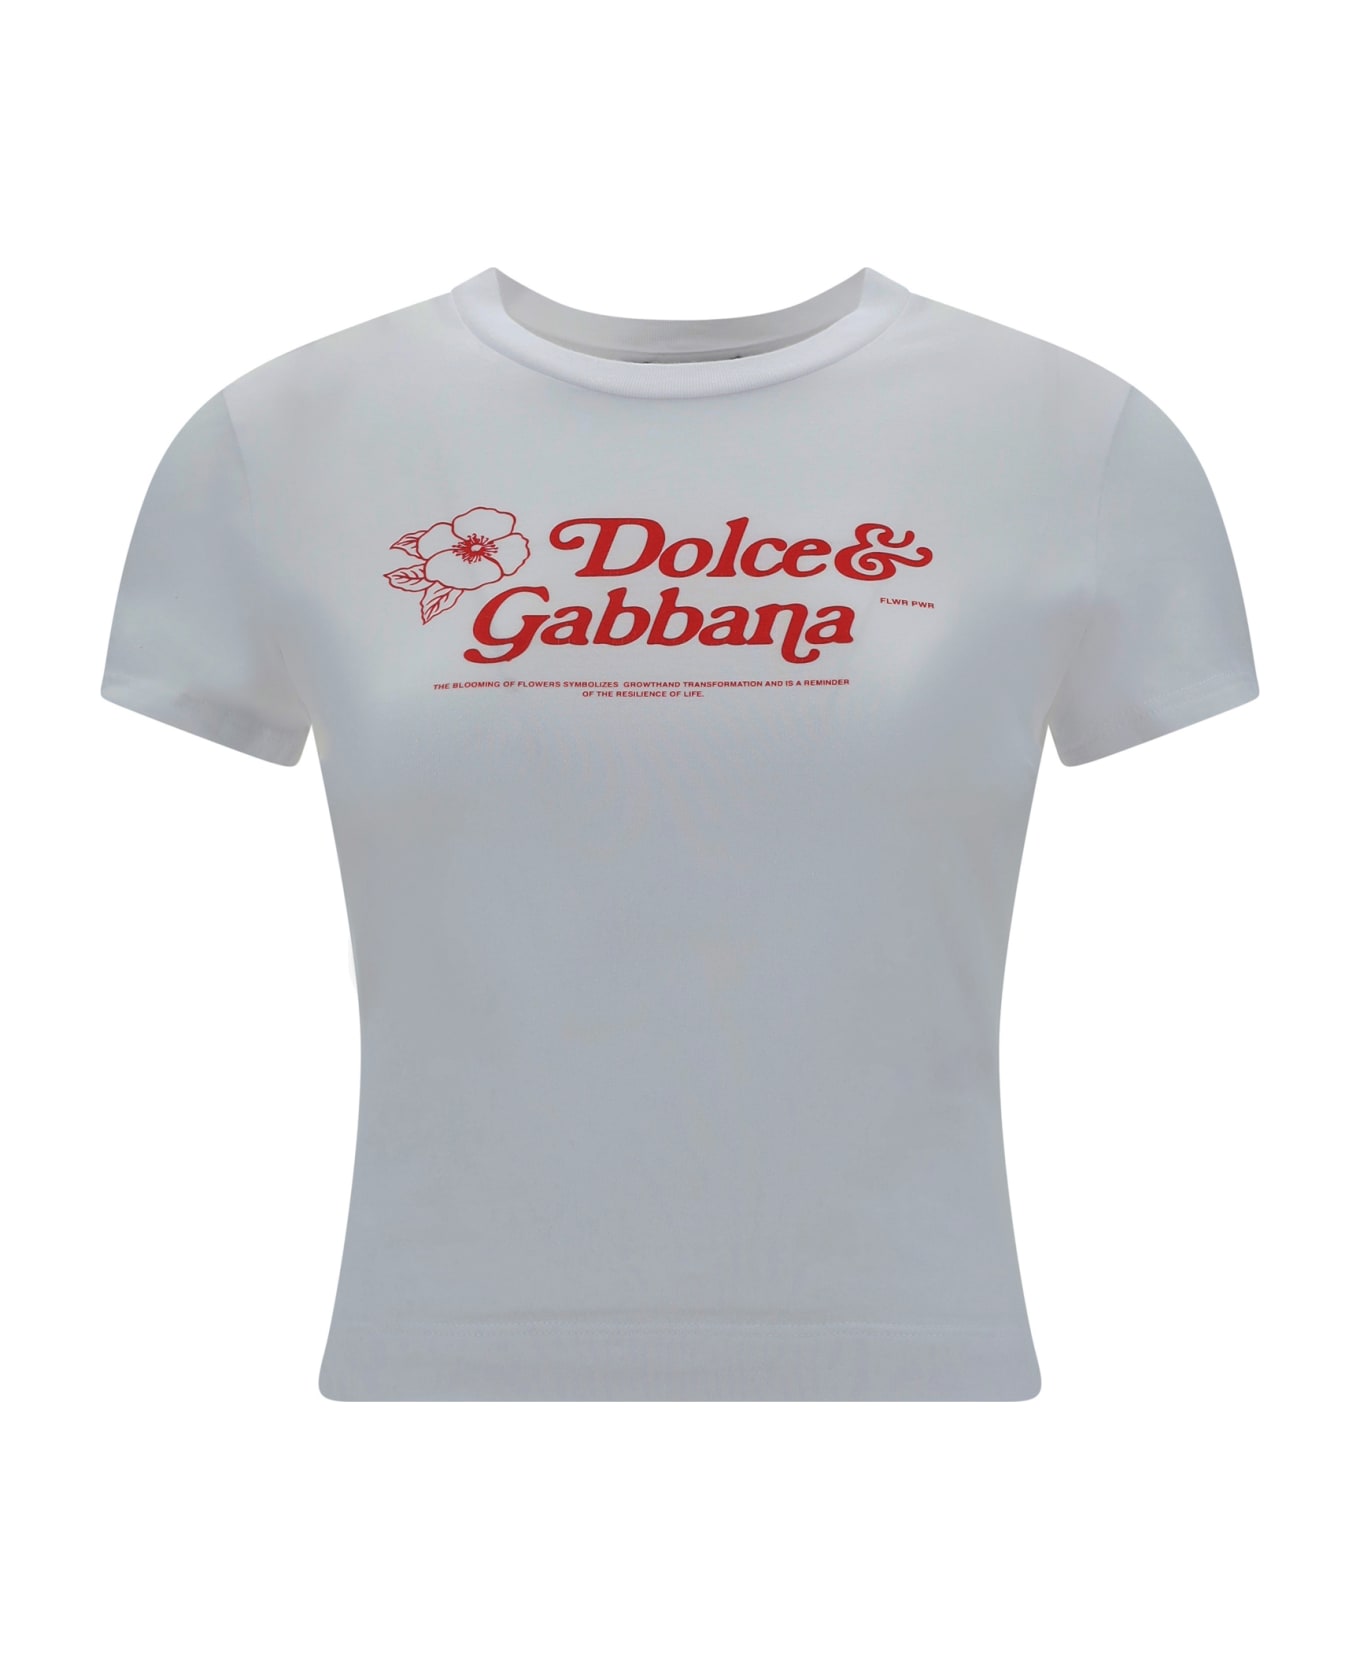 Dolce & Gabbana T-shirt - Bianco Ottico